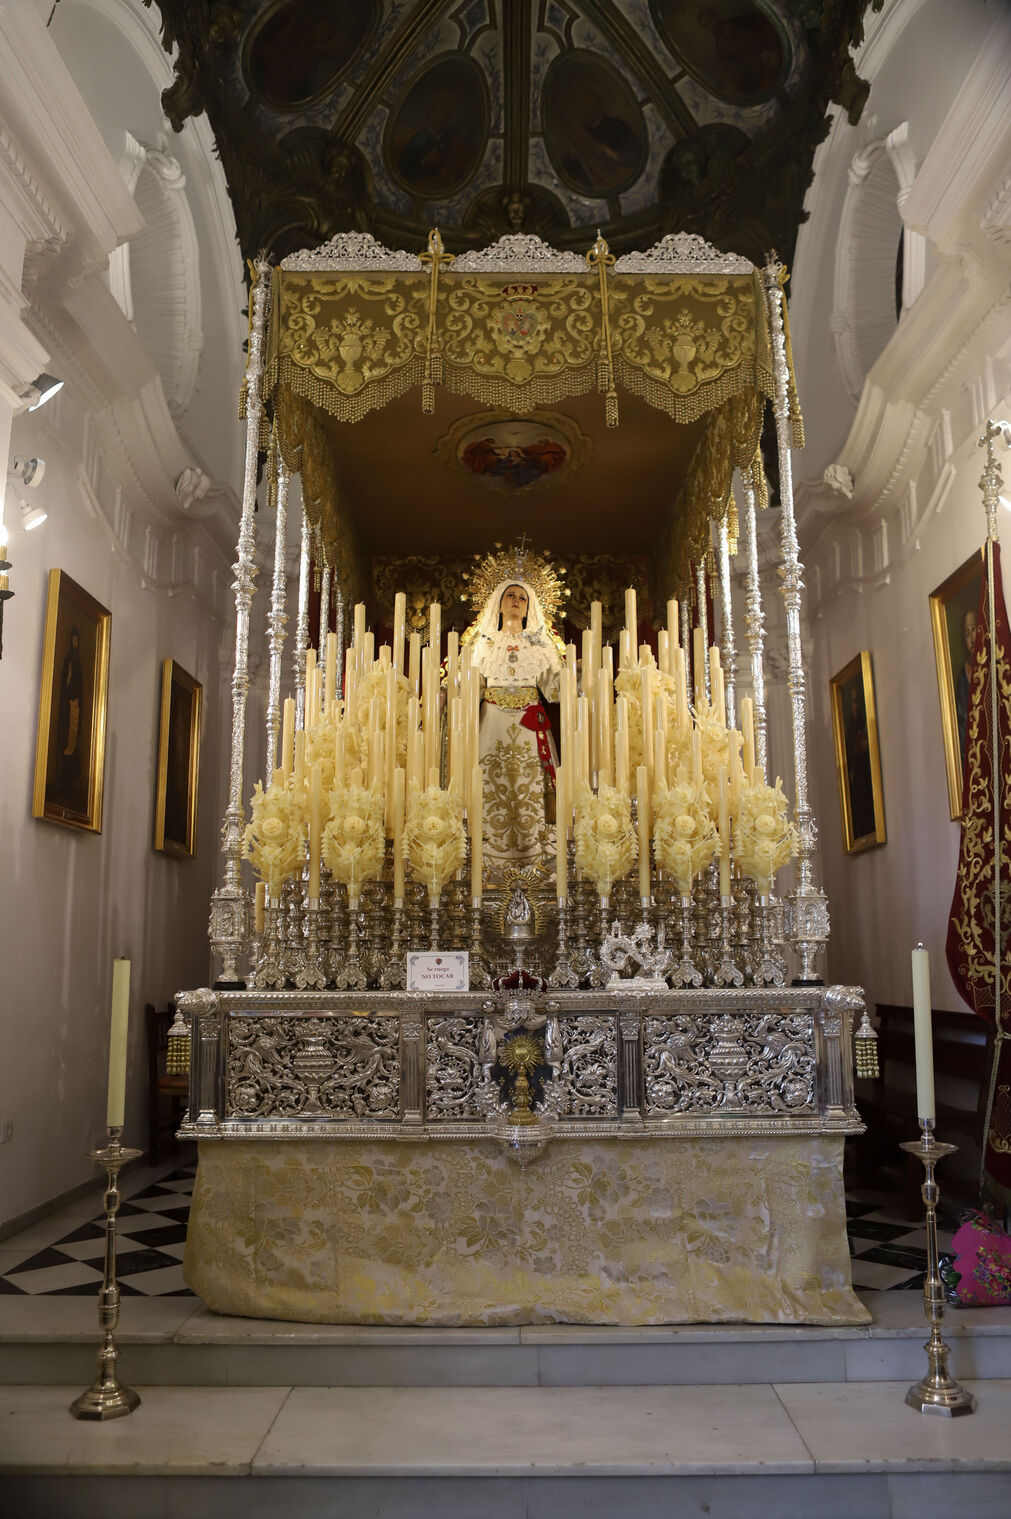 Fotos de los preparativos de la Semana Santa en Algeciras